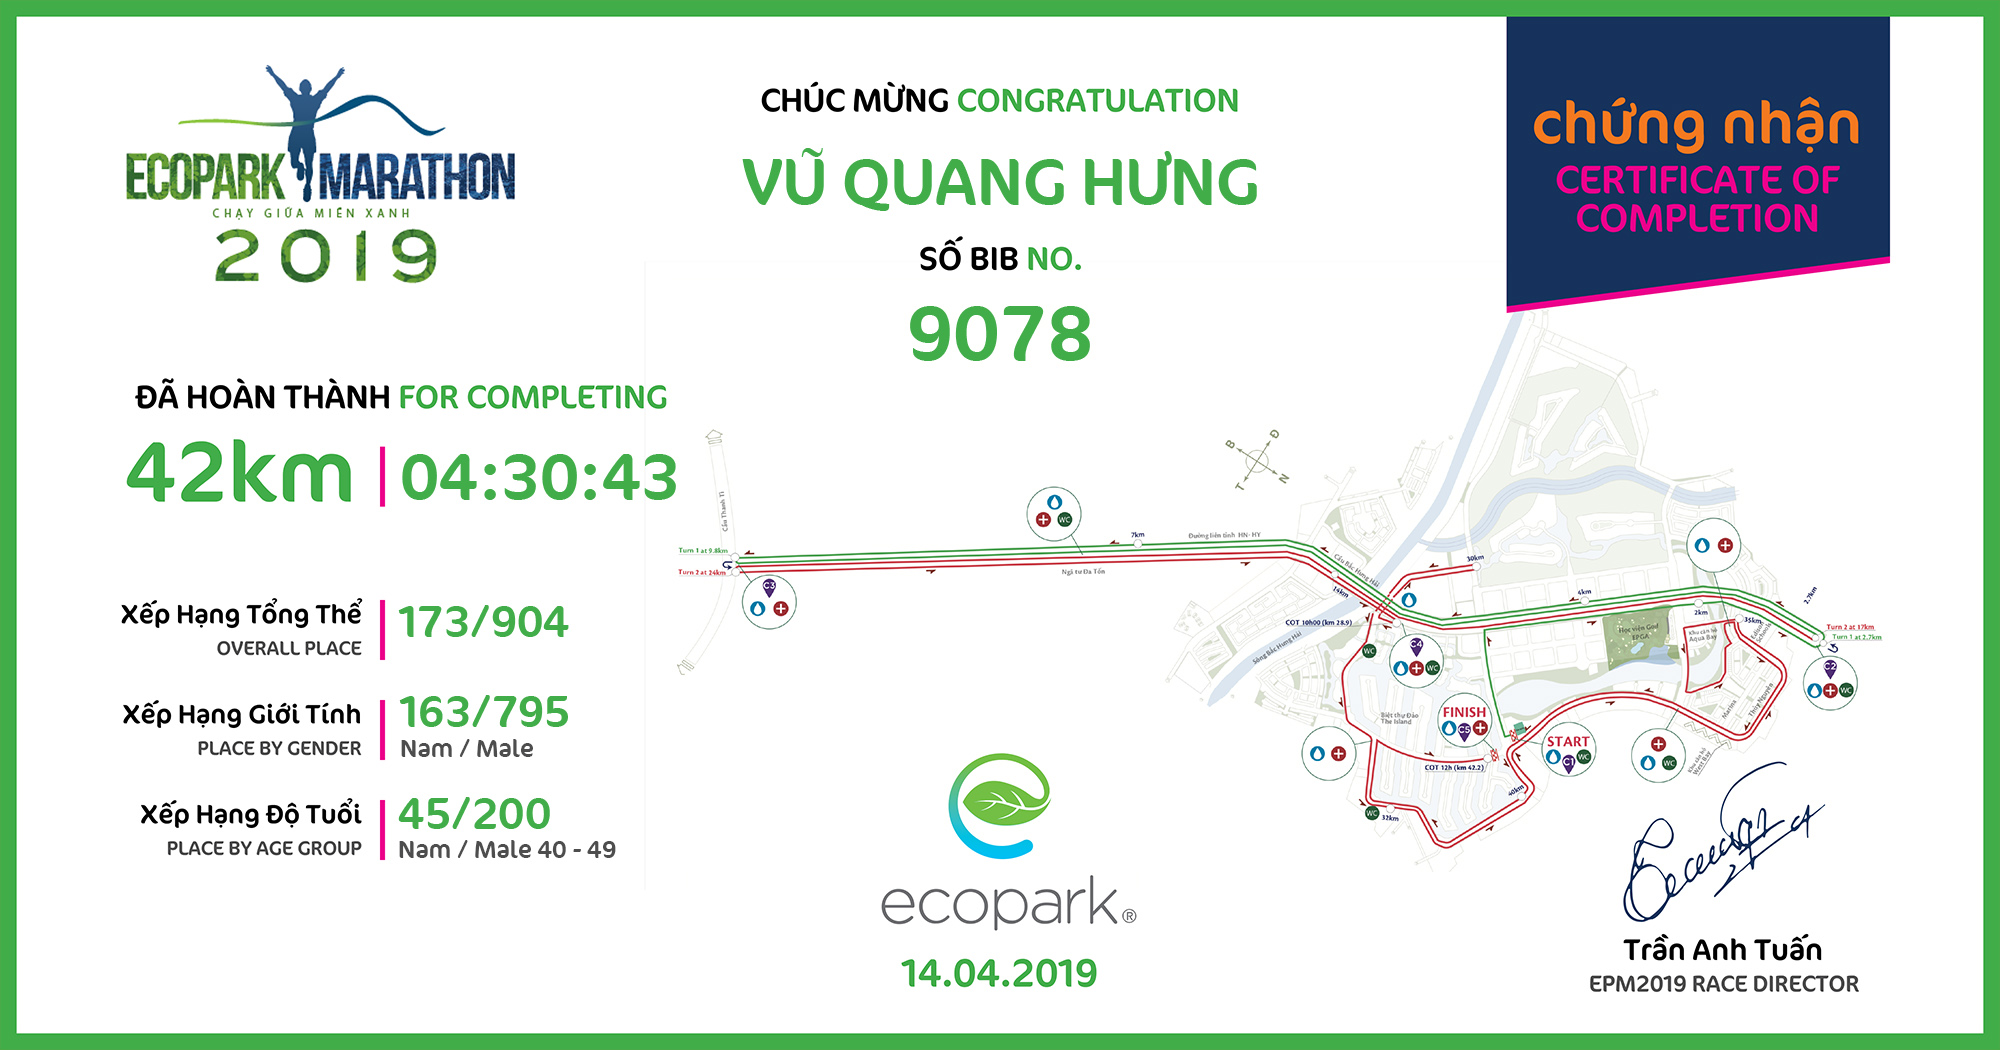 9078 - Vũ Quang Hưng